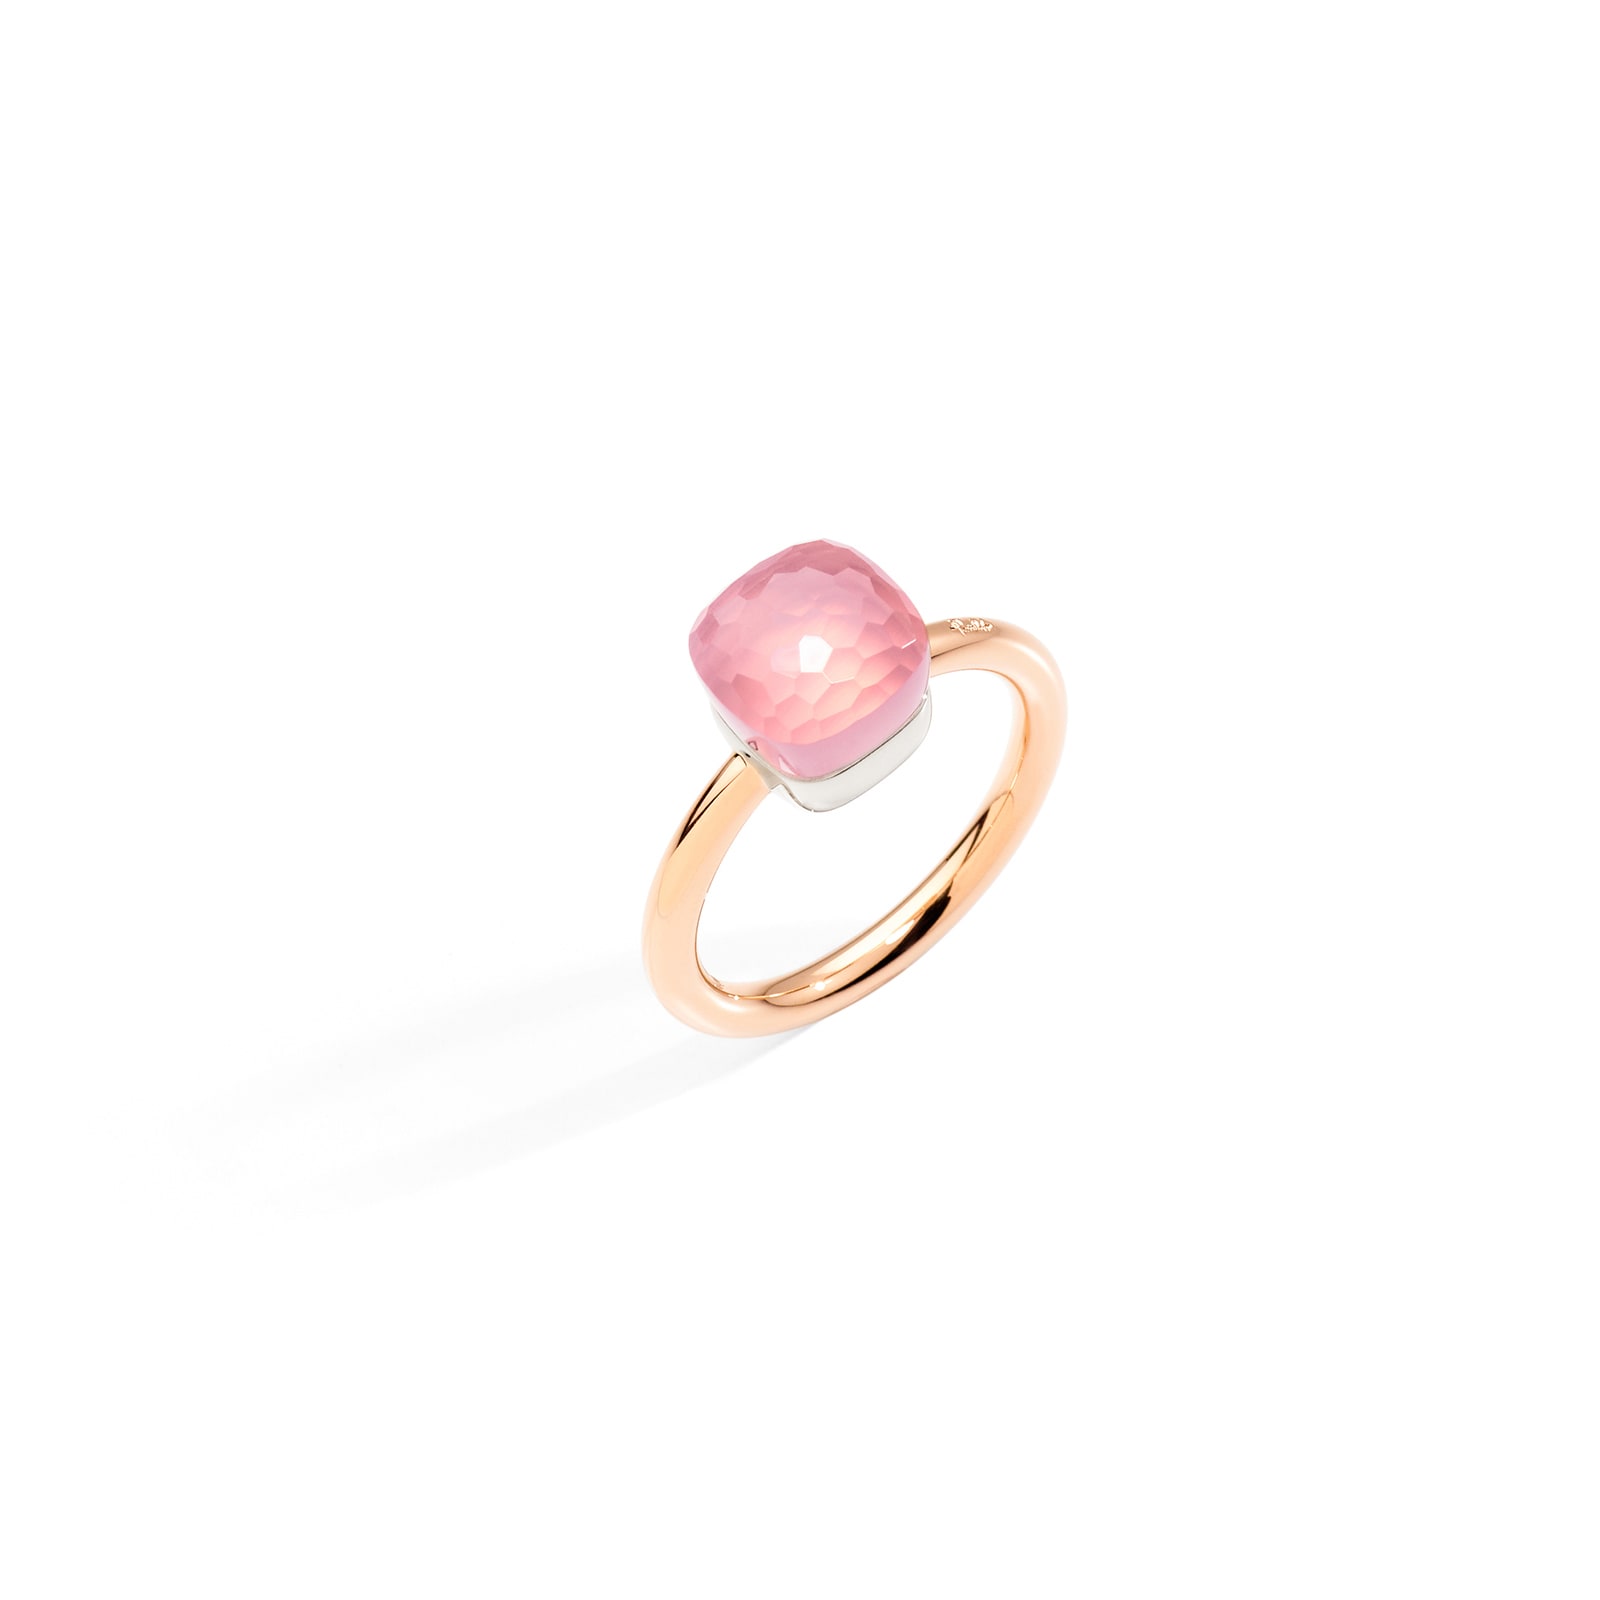 Nudo Petit 18ct Rose & White Gold Rose Quartz Ring - Ring Size N